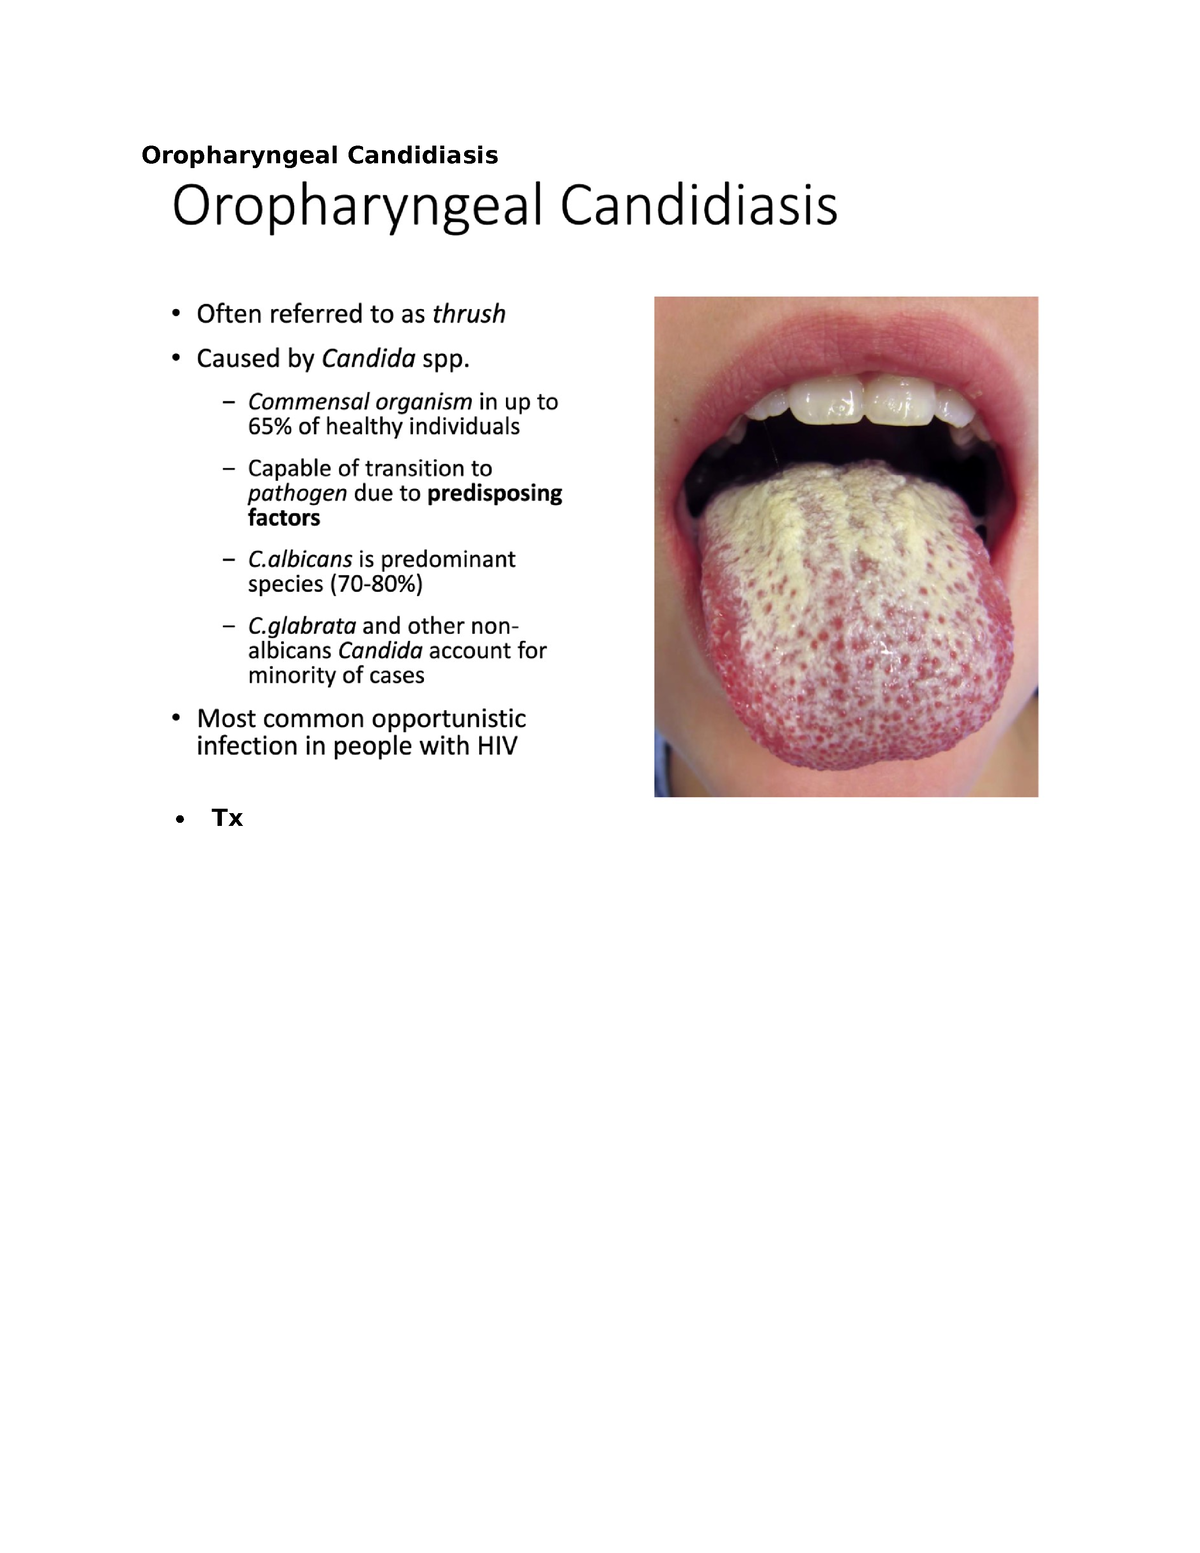 ID Exam 4 Oropharyngeal Candidiasis - EPID 0552 - Oropharyngeal ...